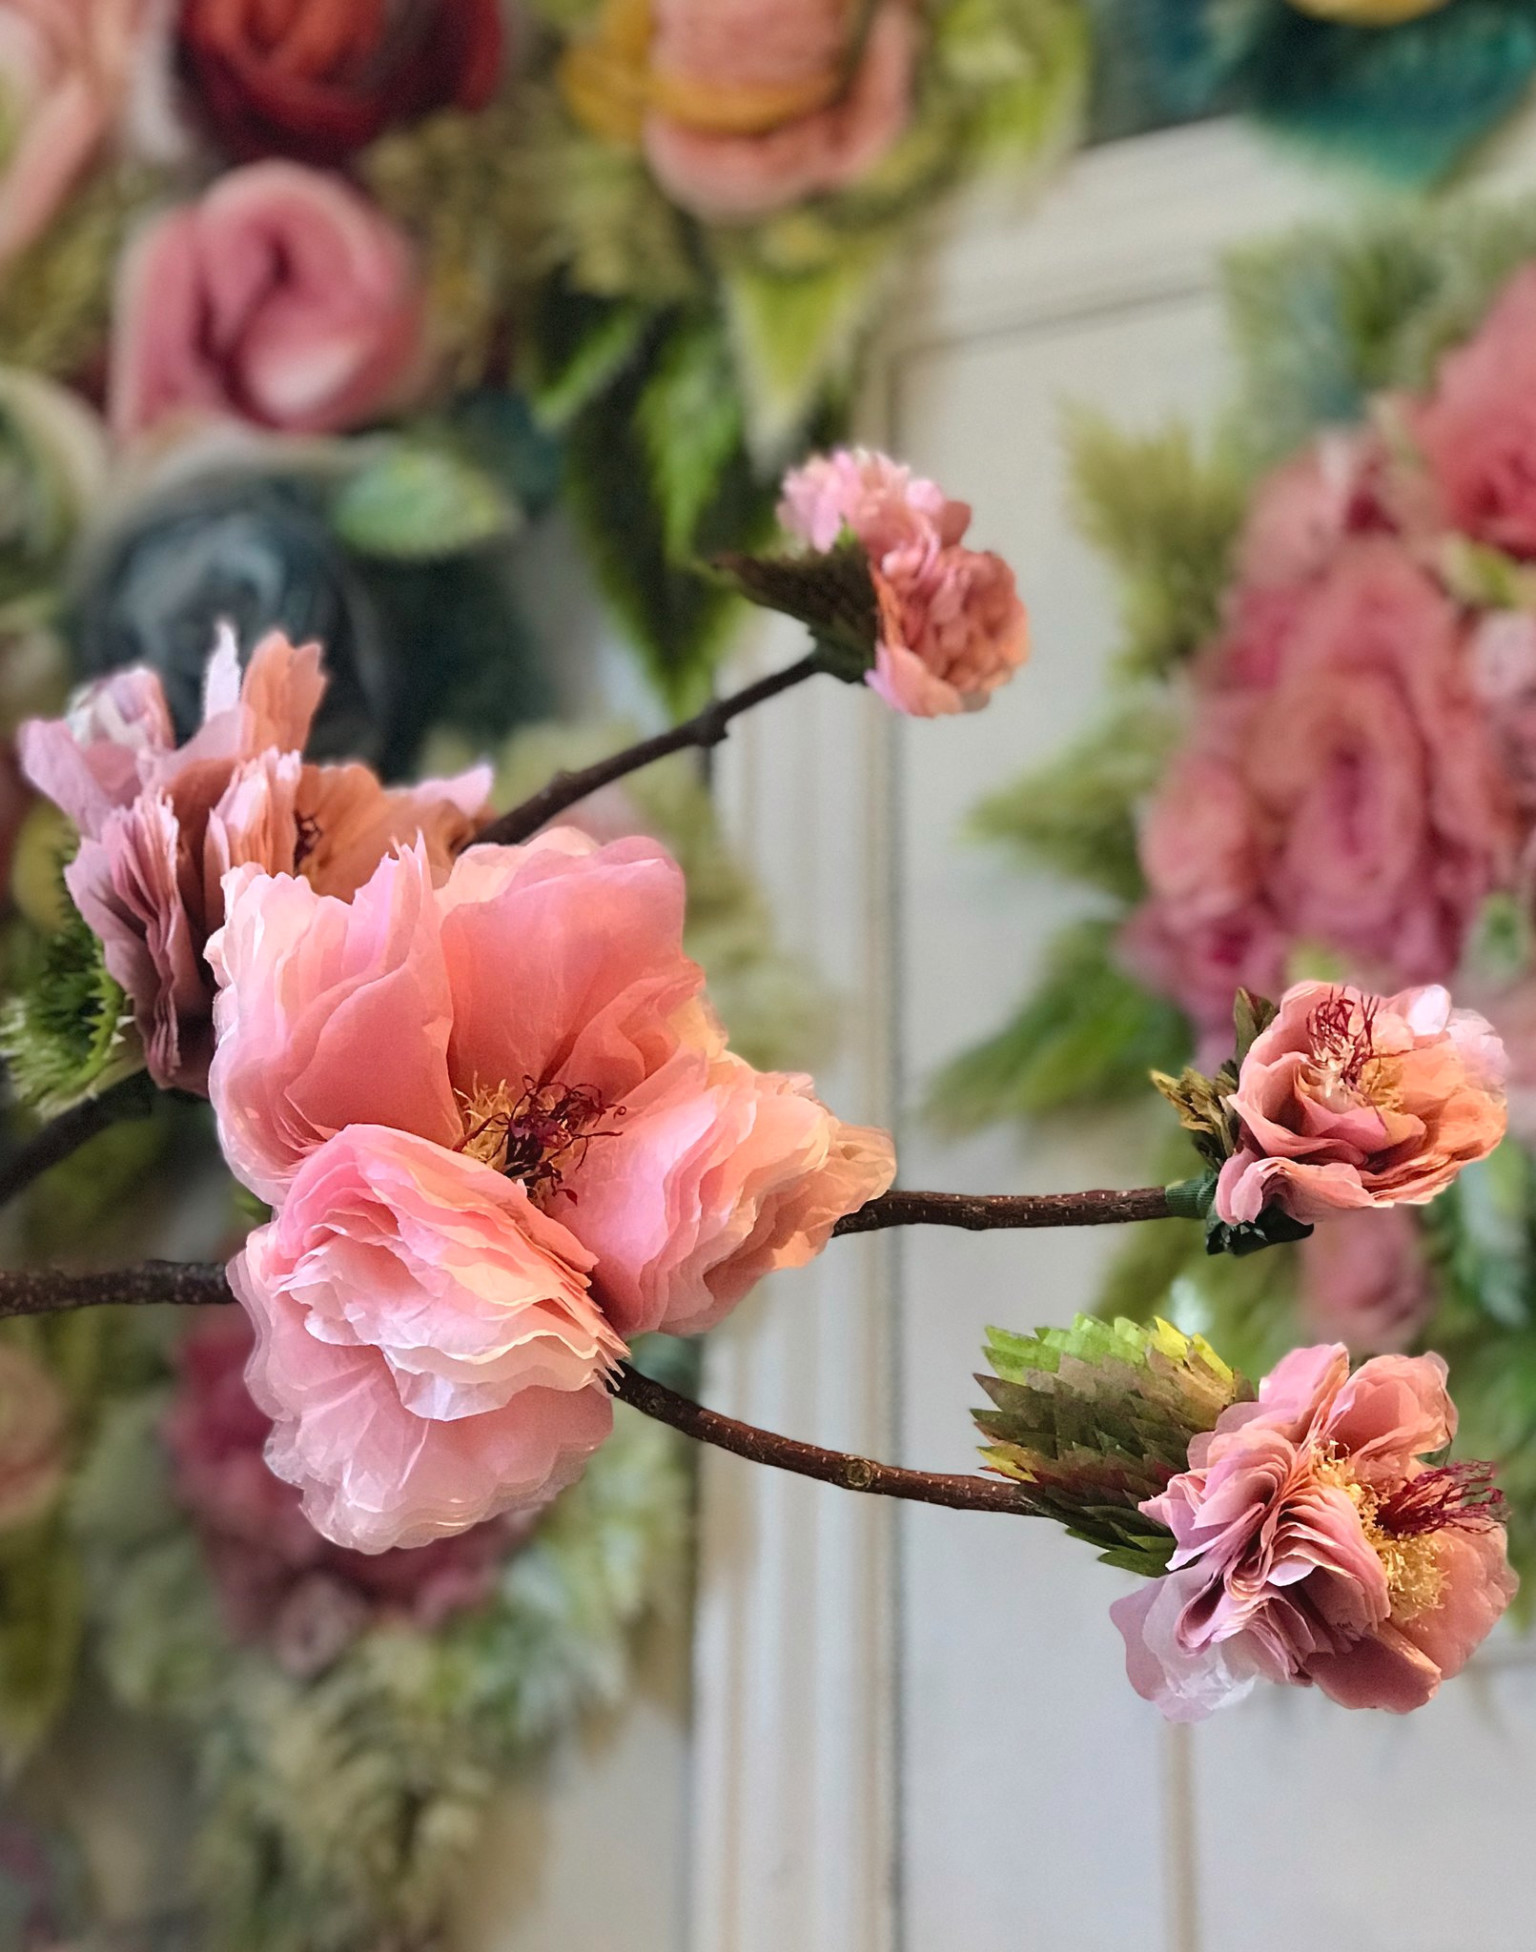 Невероятные бумажные цветы Марианны Эриксен Скотт-Хансен вдохновляемся,поделки из бумаги